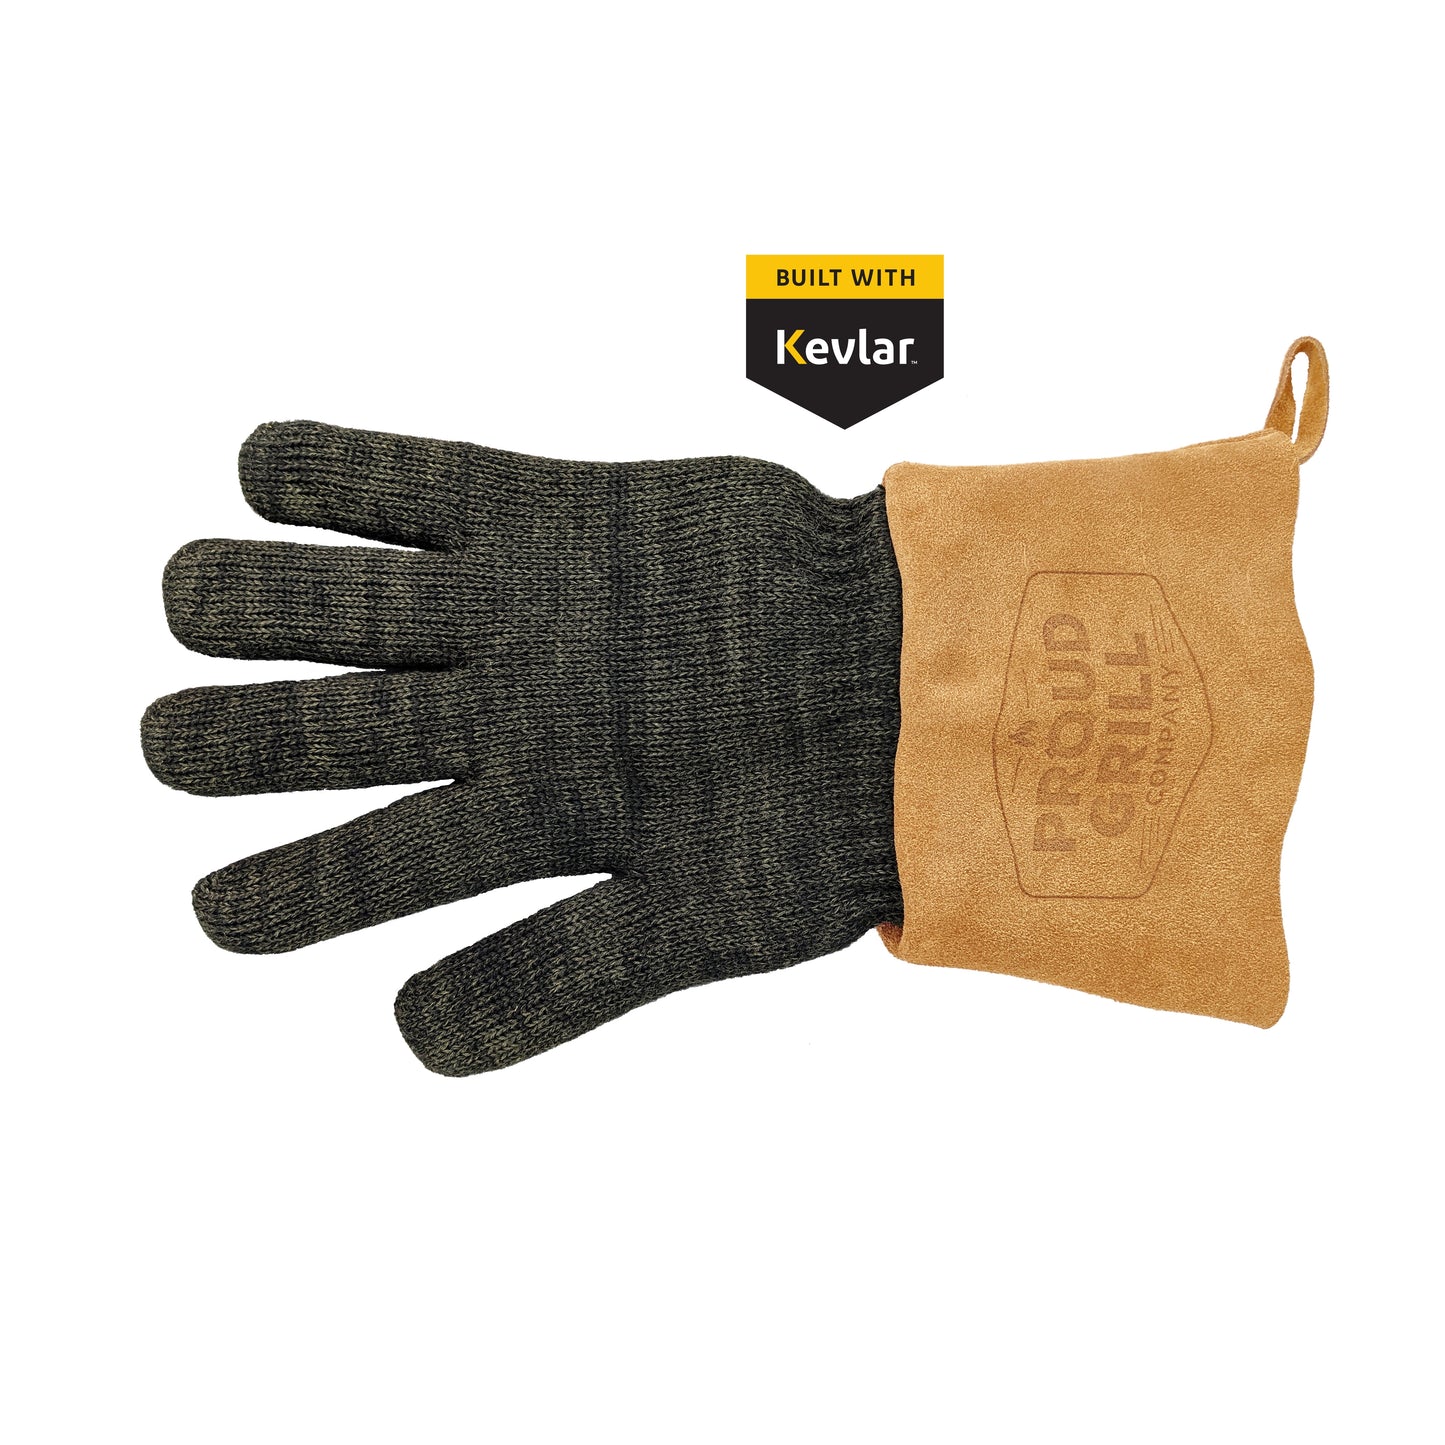 HeatShield Protective BBQ Glove